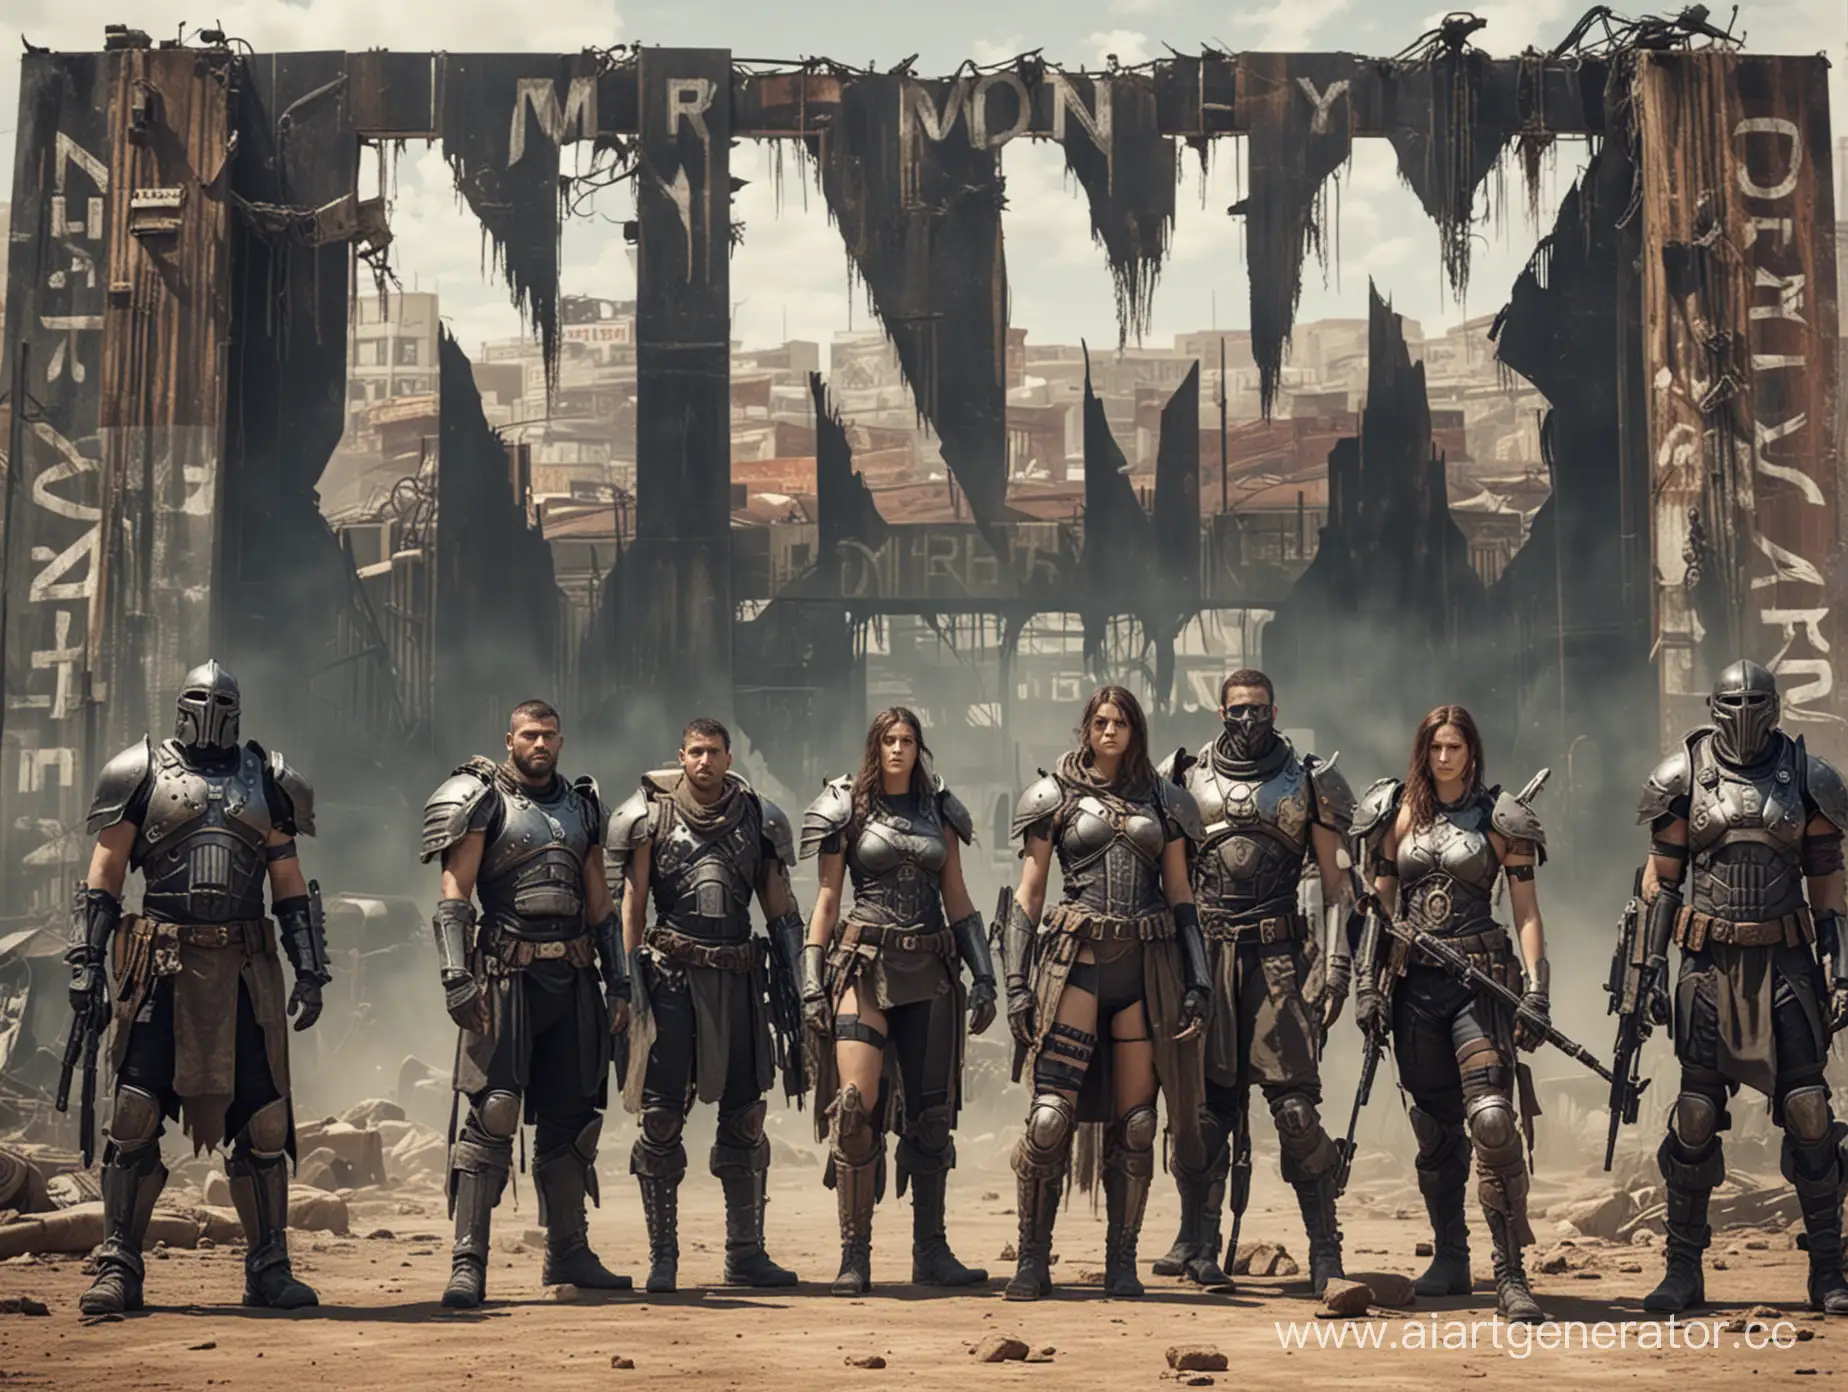 6 мужчин, 1 женщина, экипированы в пост апокалиптичную броню, стоят лицом ,  на фоне  огромная надпись "N O _ M E R C Y" 